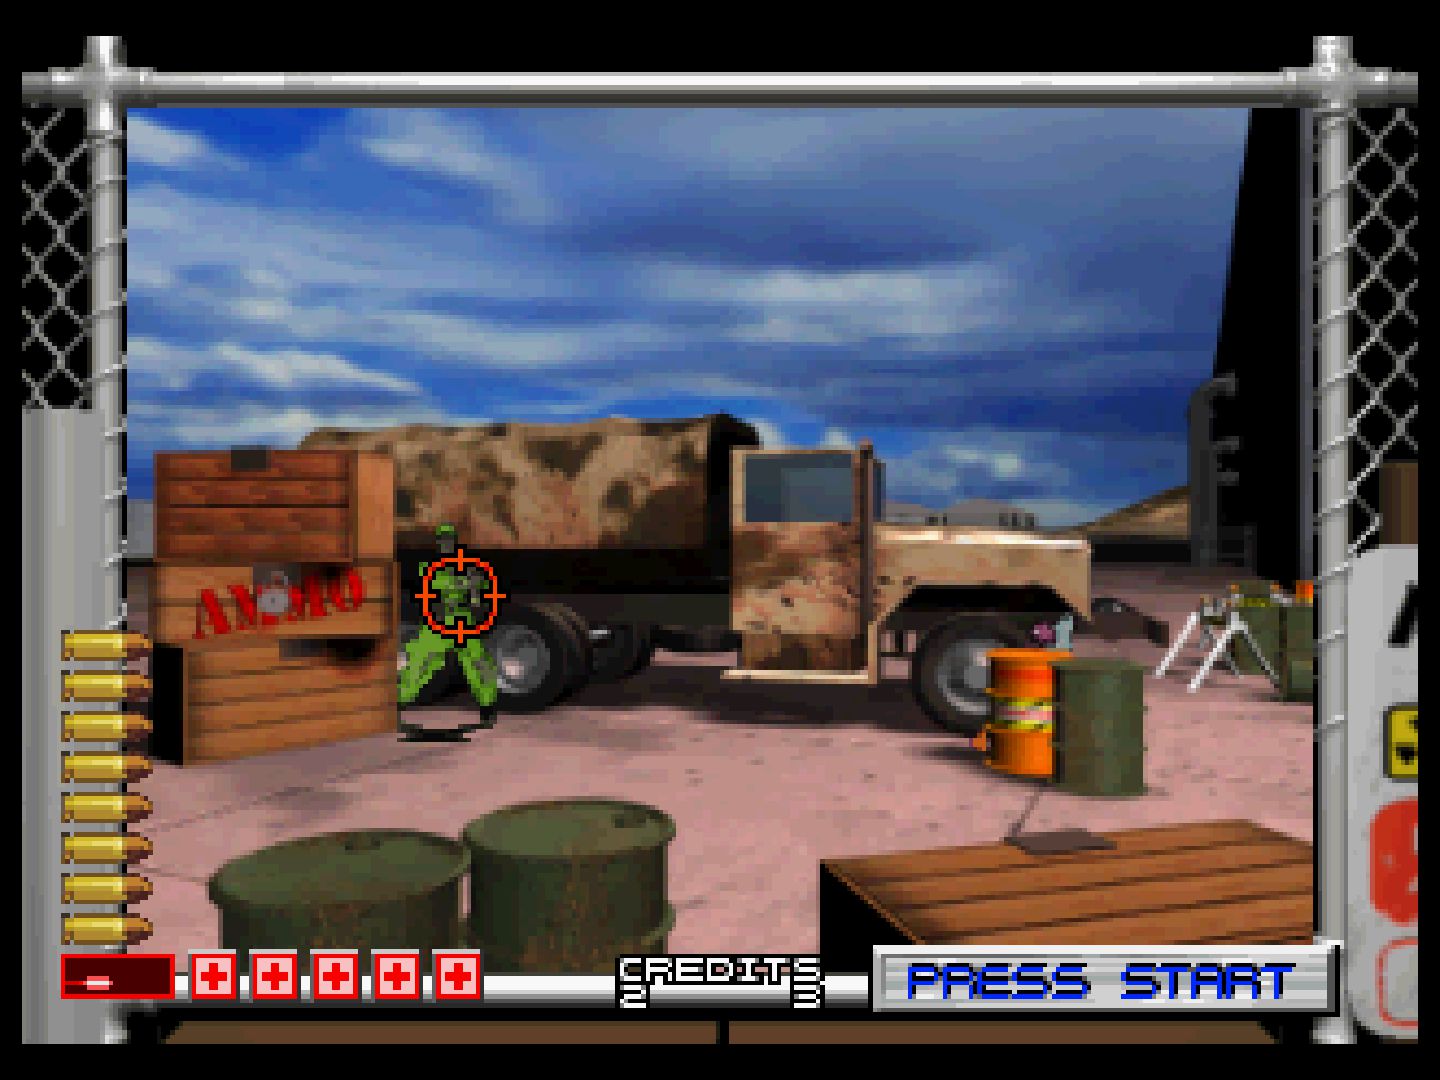 Jogo Area 51 (2005) para PlayStation 2 - Dicas, análise e imagens